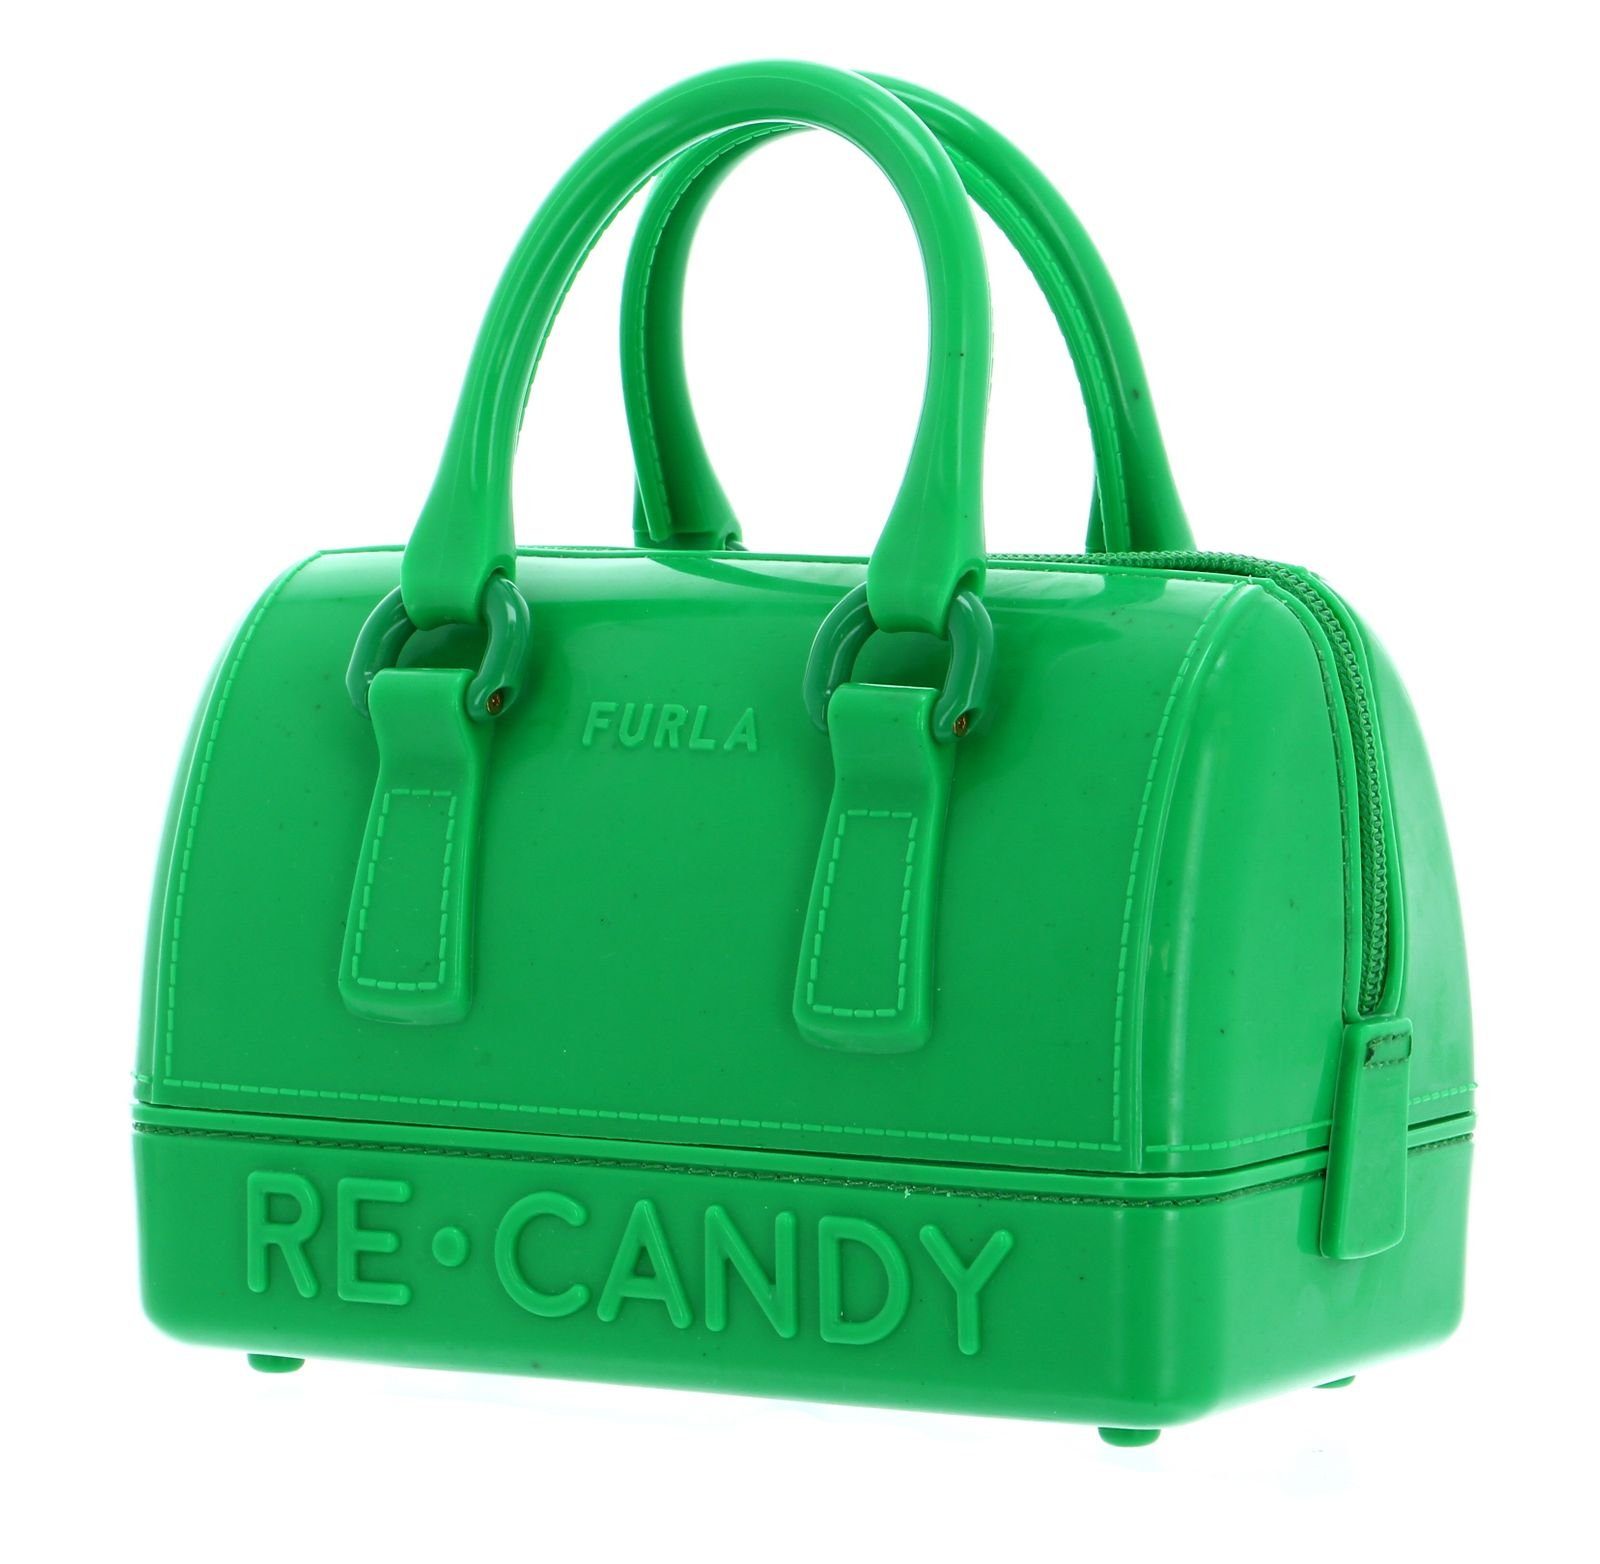 Furla Handtasche Grass Candy